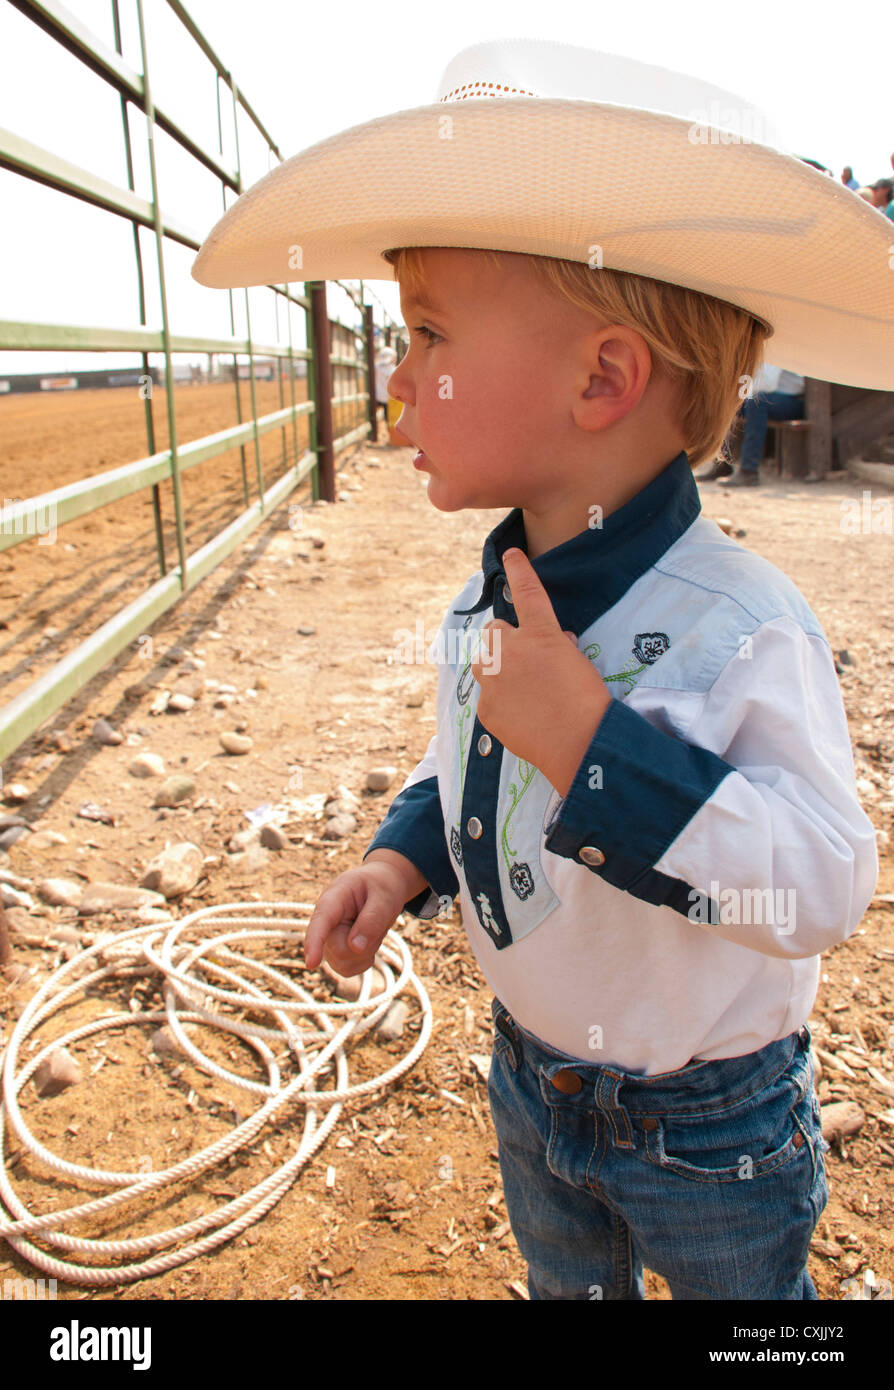 Cowboys kids habillés en tenue de l'ouest à Rodeo, Bruneau, California, USA Banque D'Images